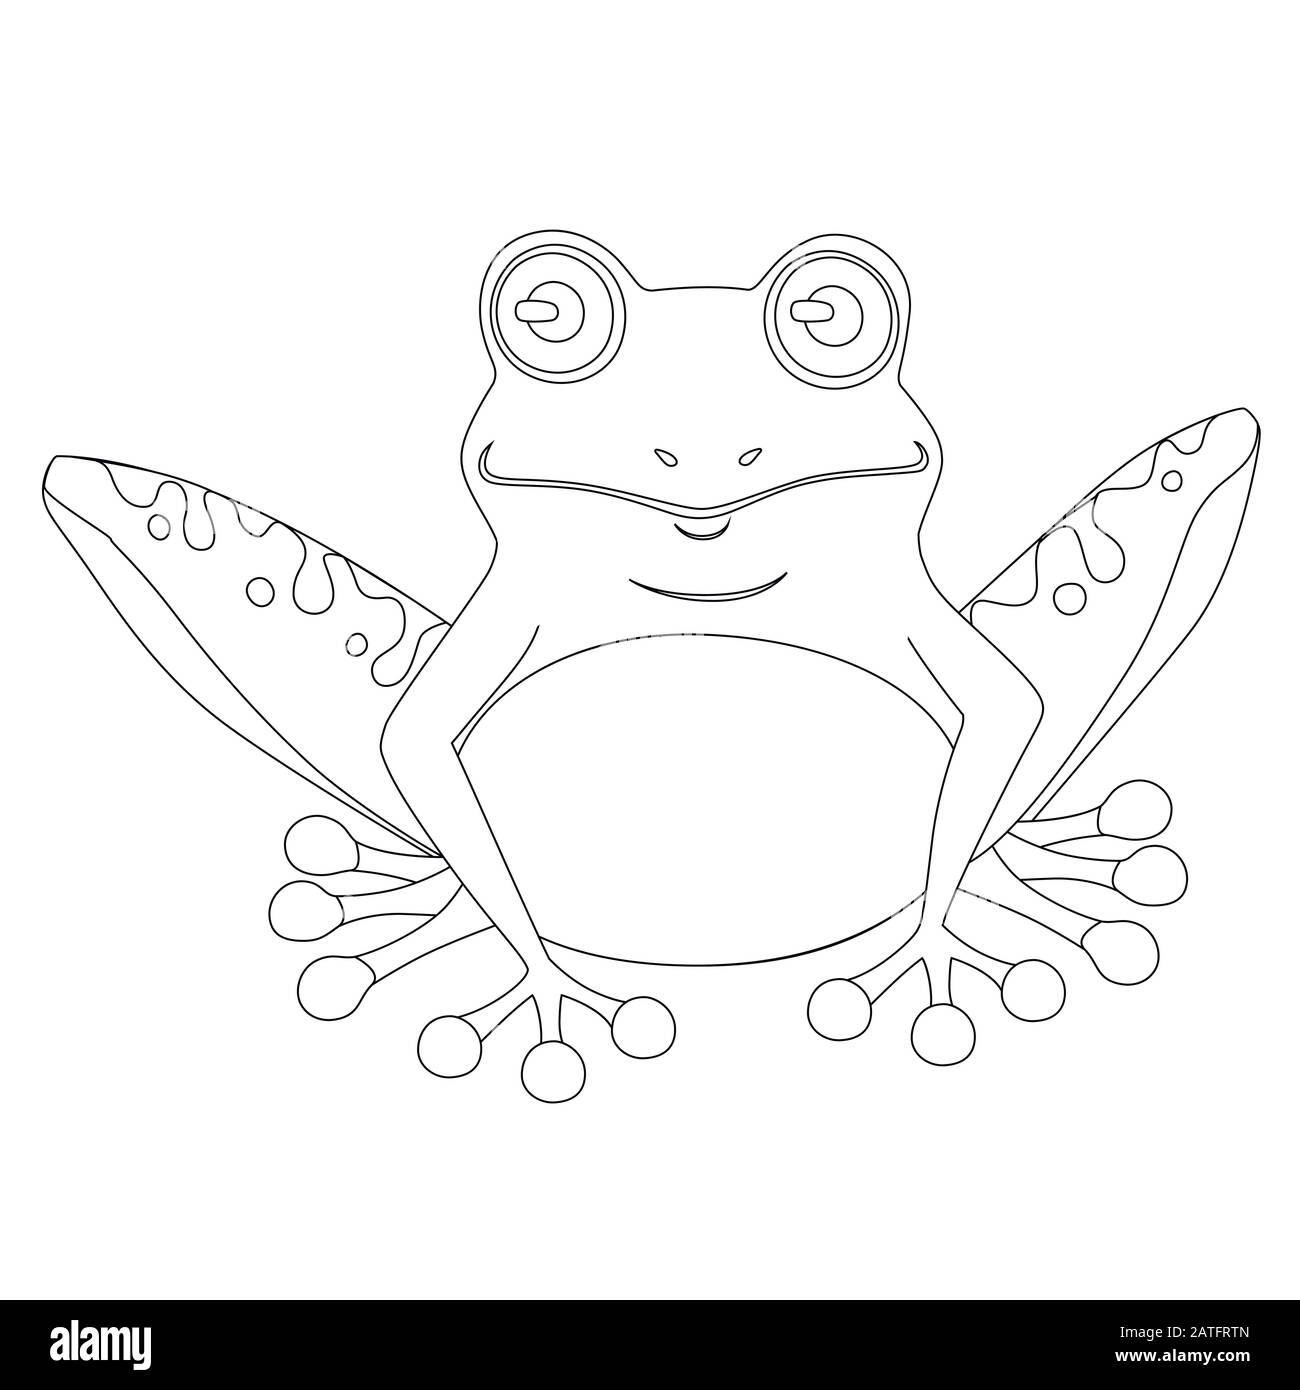 Mignonne grenouille de style contour souriant assis sur le sol dessin d'animal de dessin vectoriel plat illustration isolée sur fond blanc Illustration de Vecteur